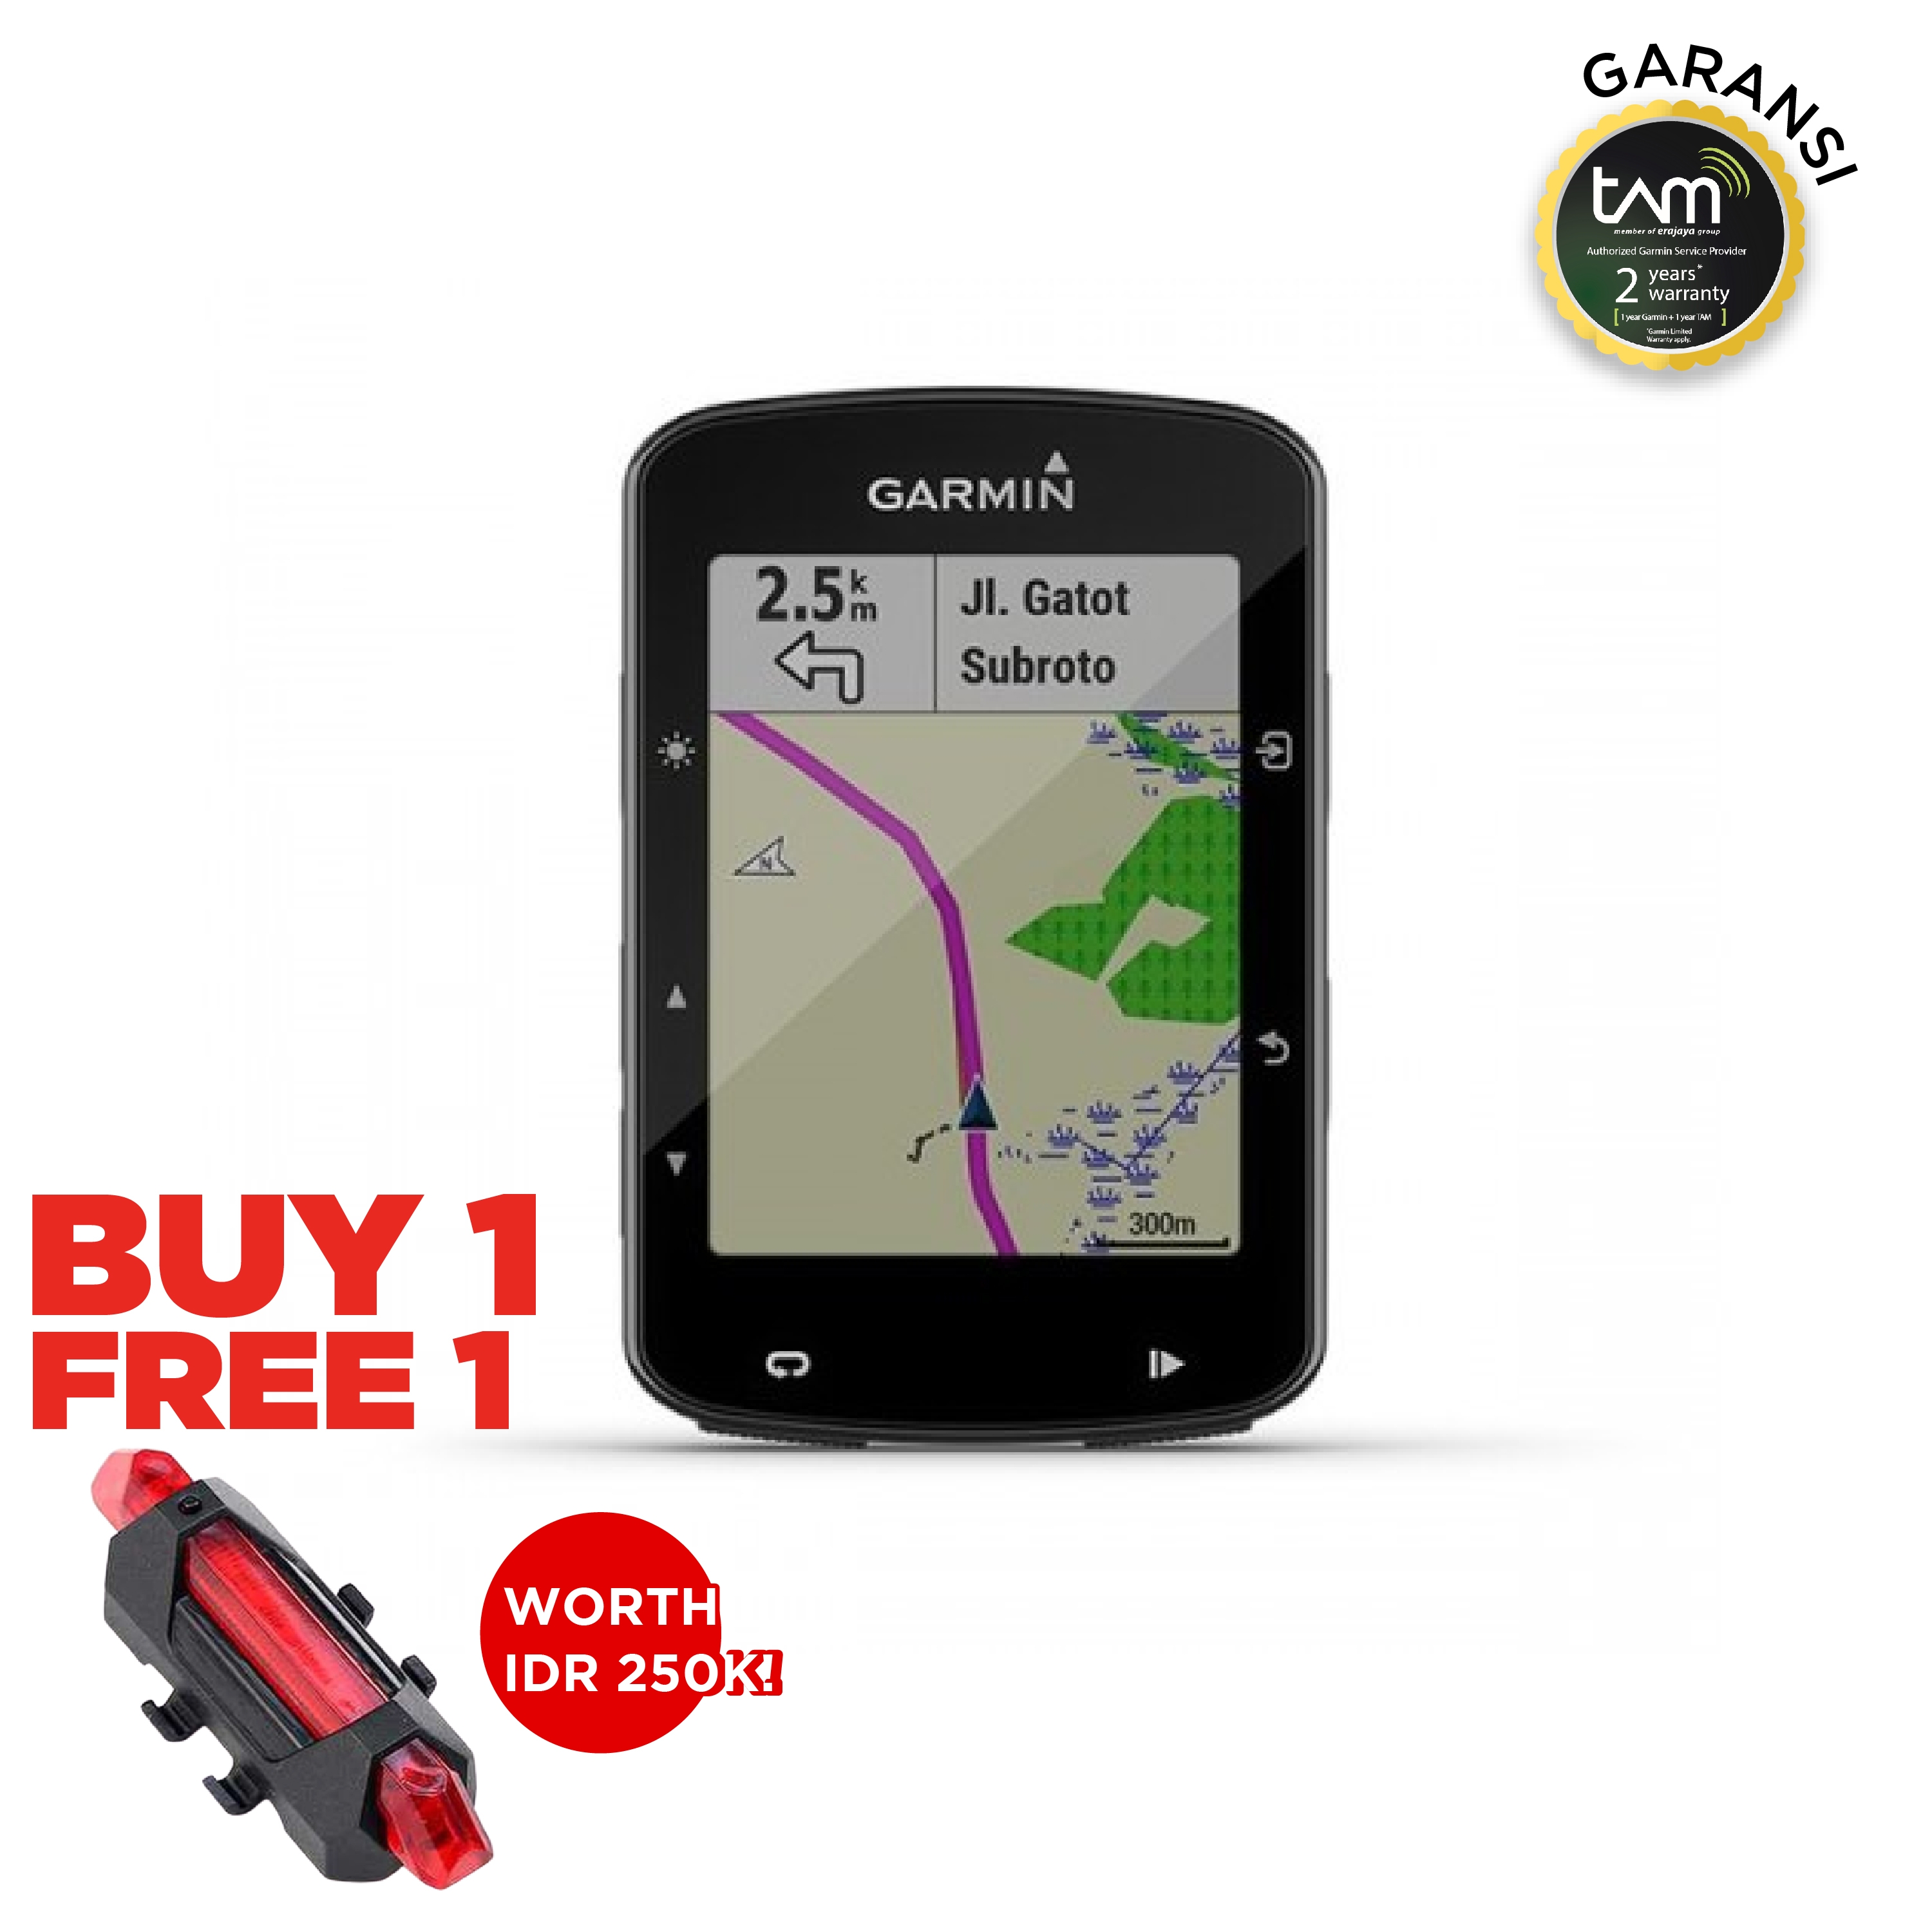 Garmin Edge 520 Plus GPS | Authorized Online Retailer | Harga